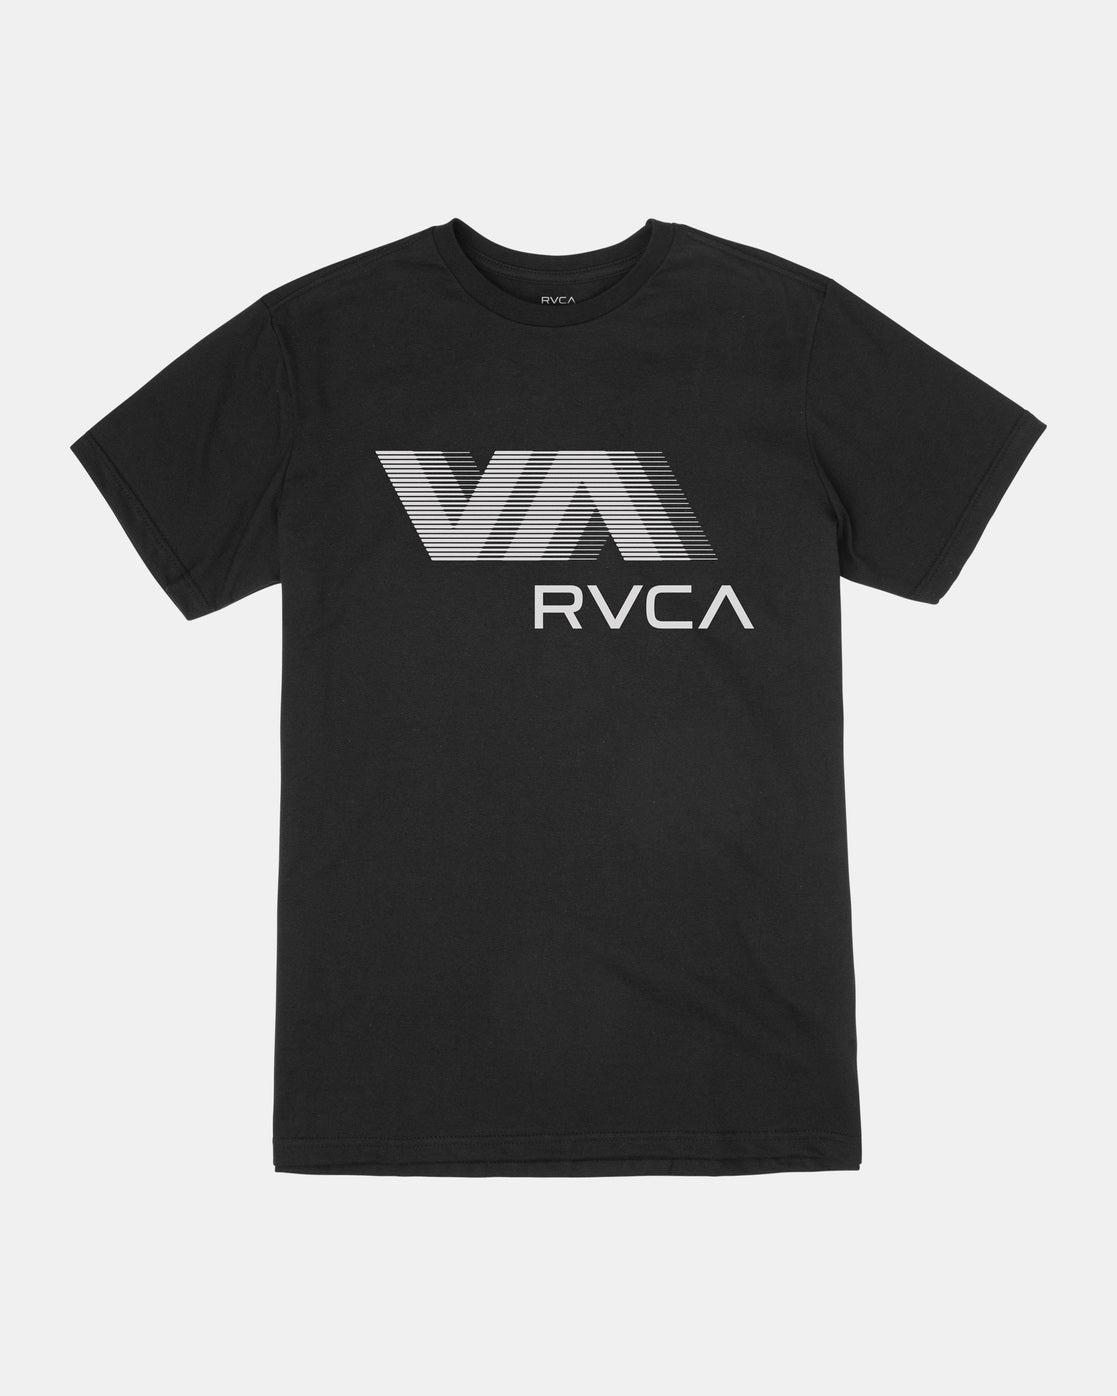 VA RVCA Blur Tee - Athletic Heather